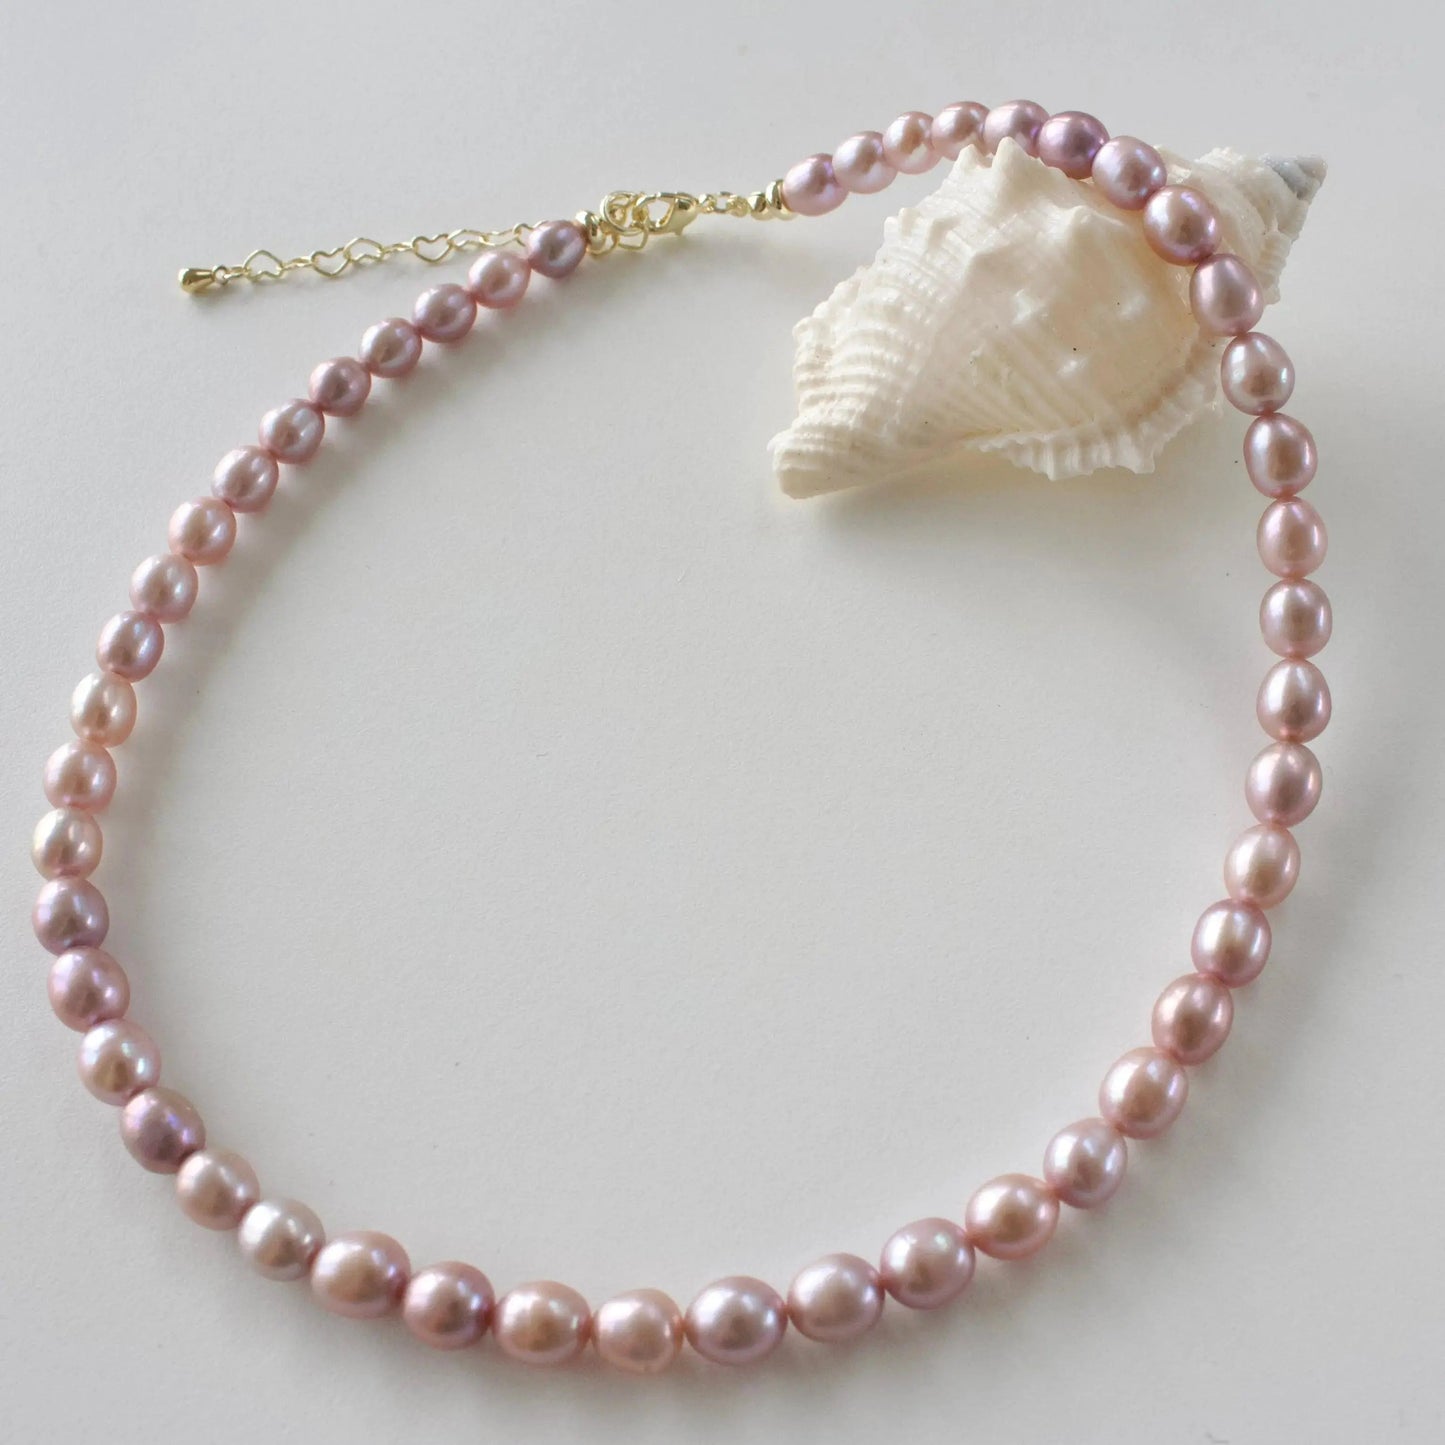 6.5mm klassische Perlenkette Schmuck Online ¦ JK Jewelry & Accessories